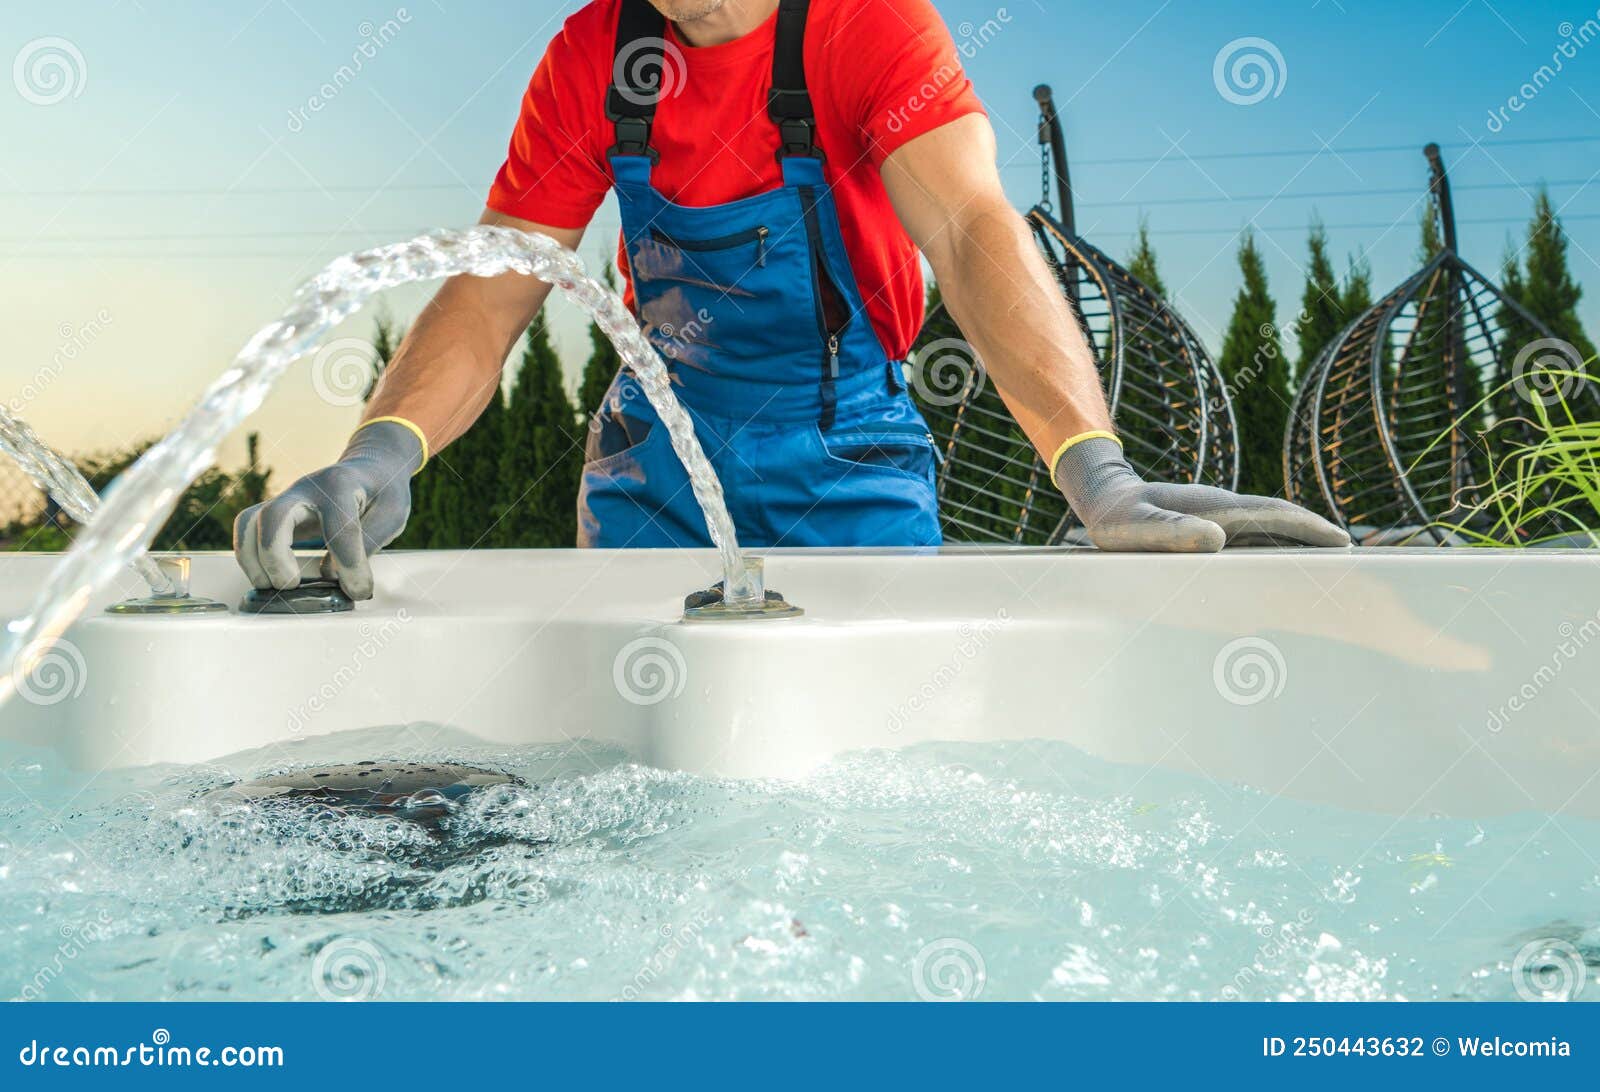 spa technician performing hot tub checks